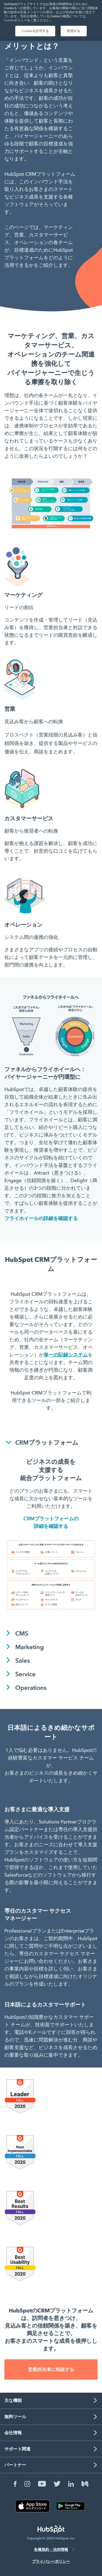 キャプチャ画面 会社名:HubSpot Japan株式会社プロジェクト名:Hubspot 画面名:アバウト・紹介 デバイス名:SPカテゴリ:WEB・インターネットタグ:アバウト・紹介,SP